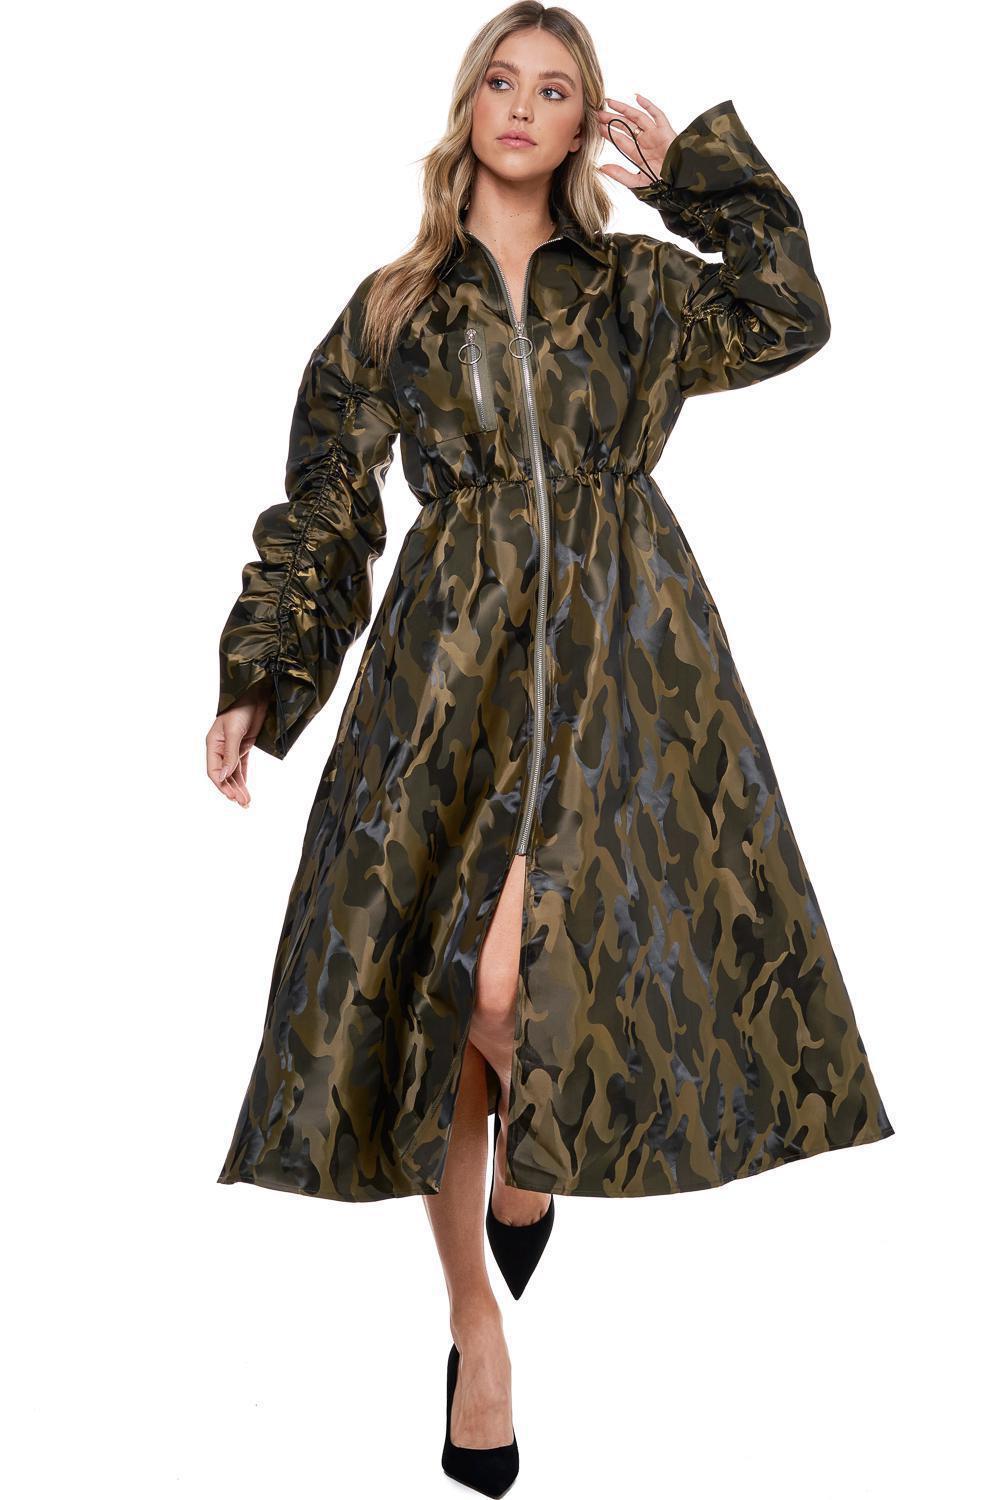 Camo Zipper Dress/Coat